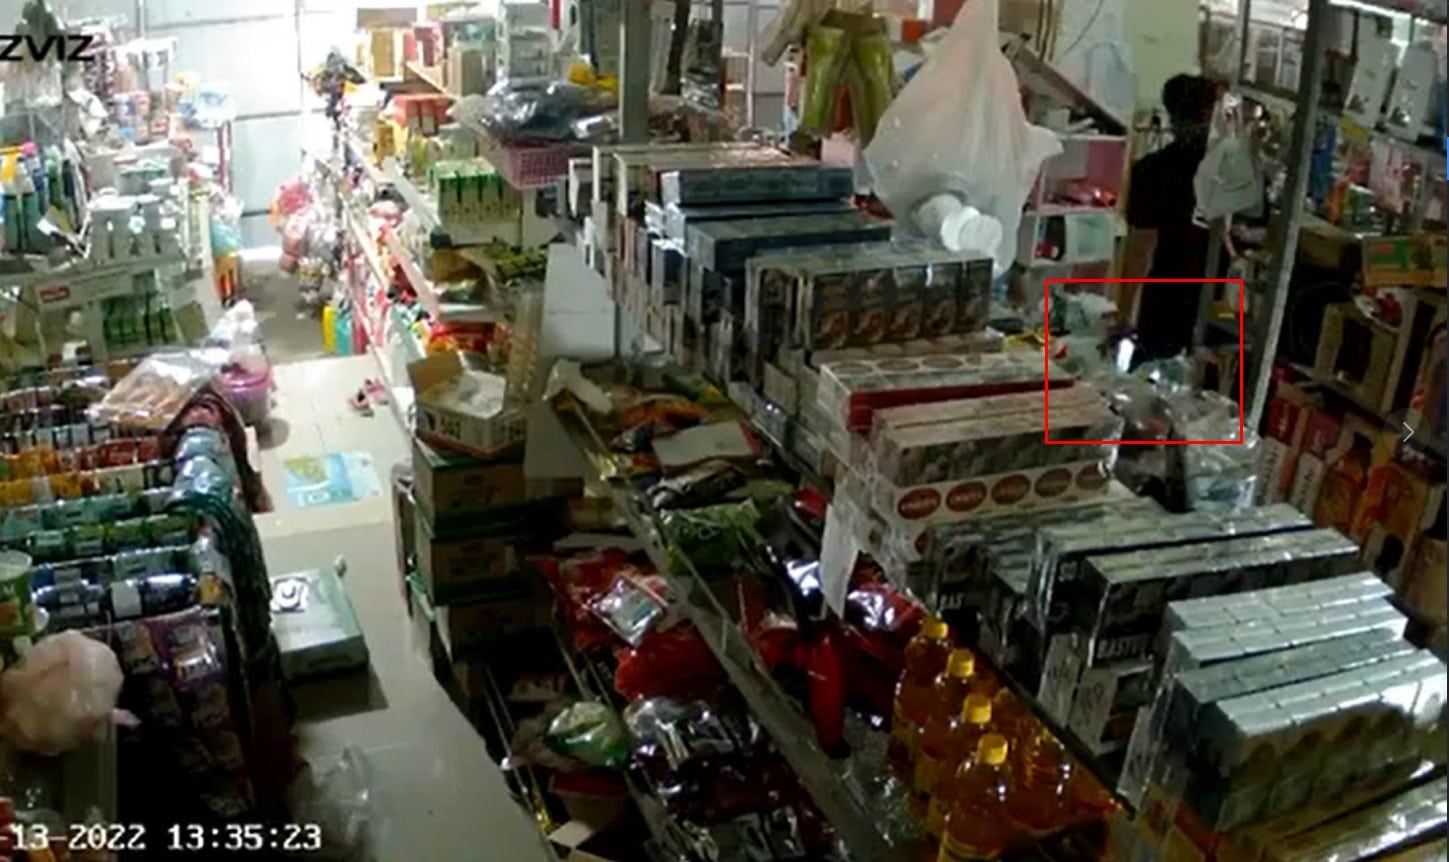 NÓNG: Video hiện trường vụ việc kinh hoàng ở Đồng Nai hôm qua